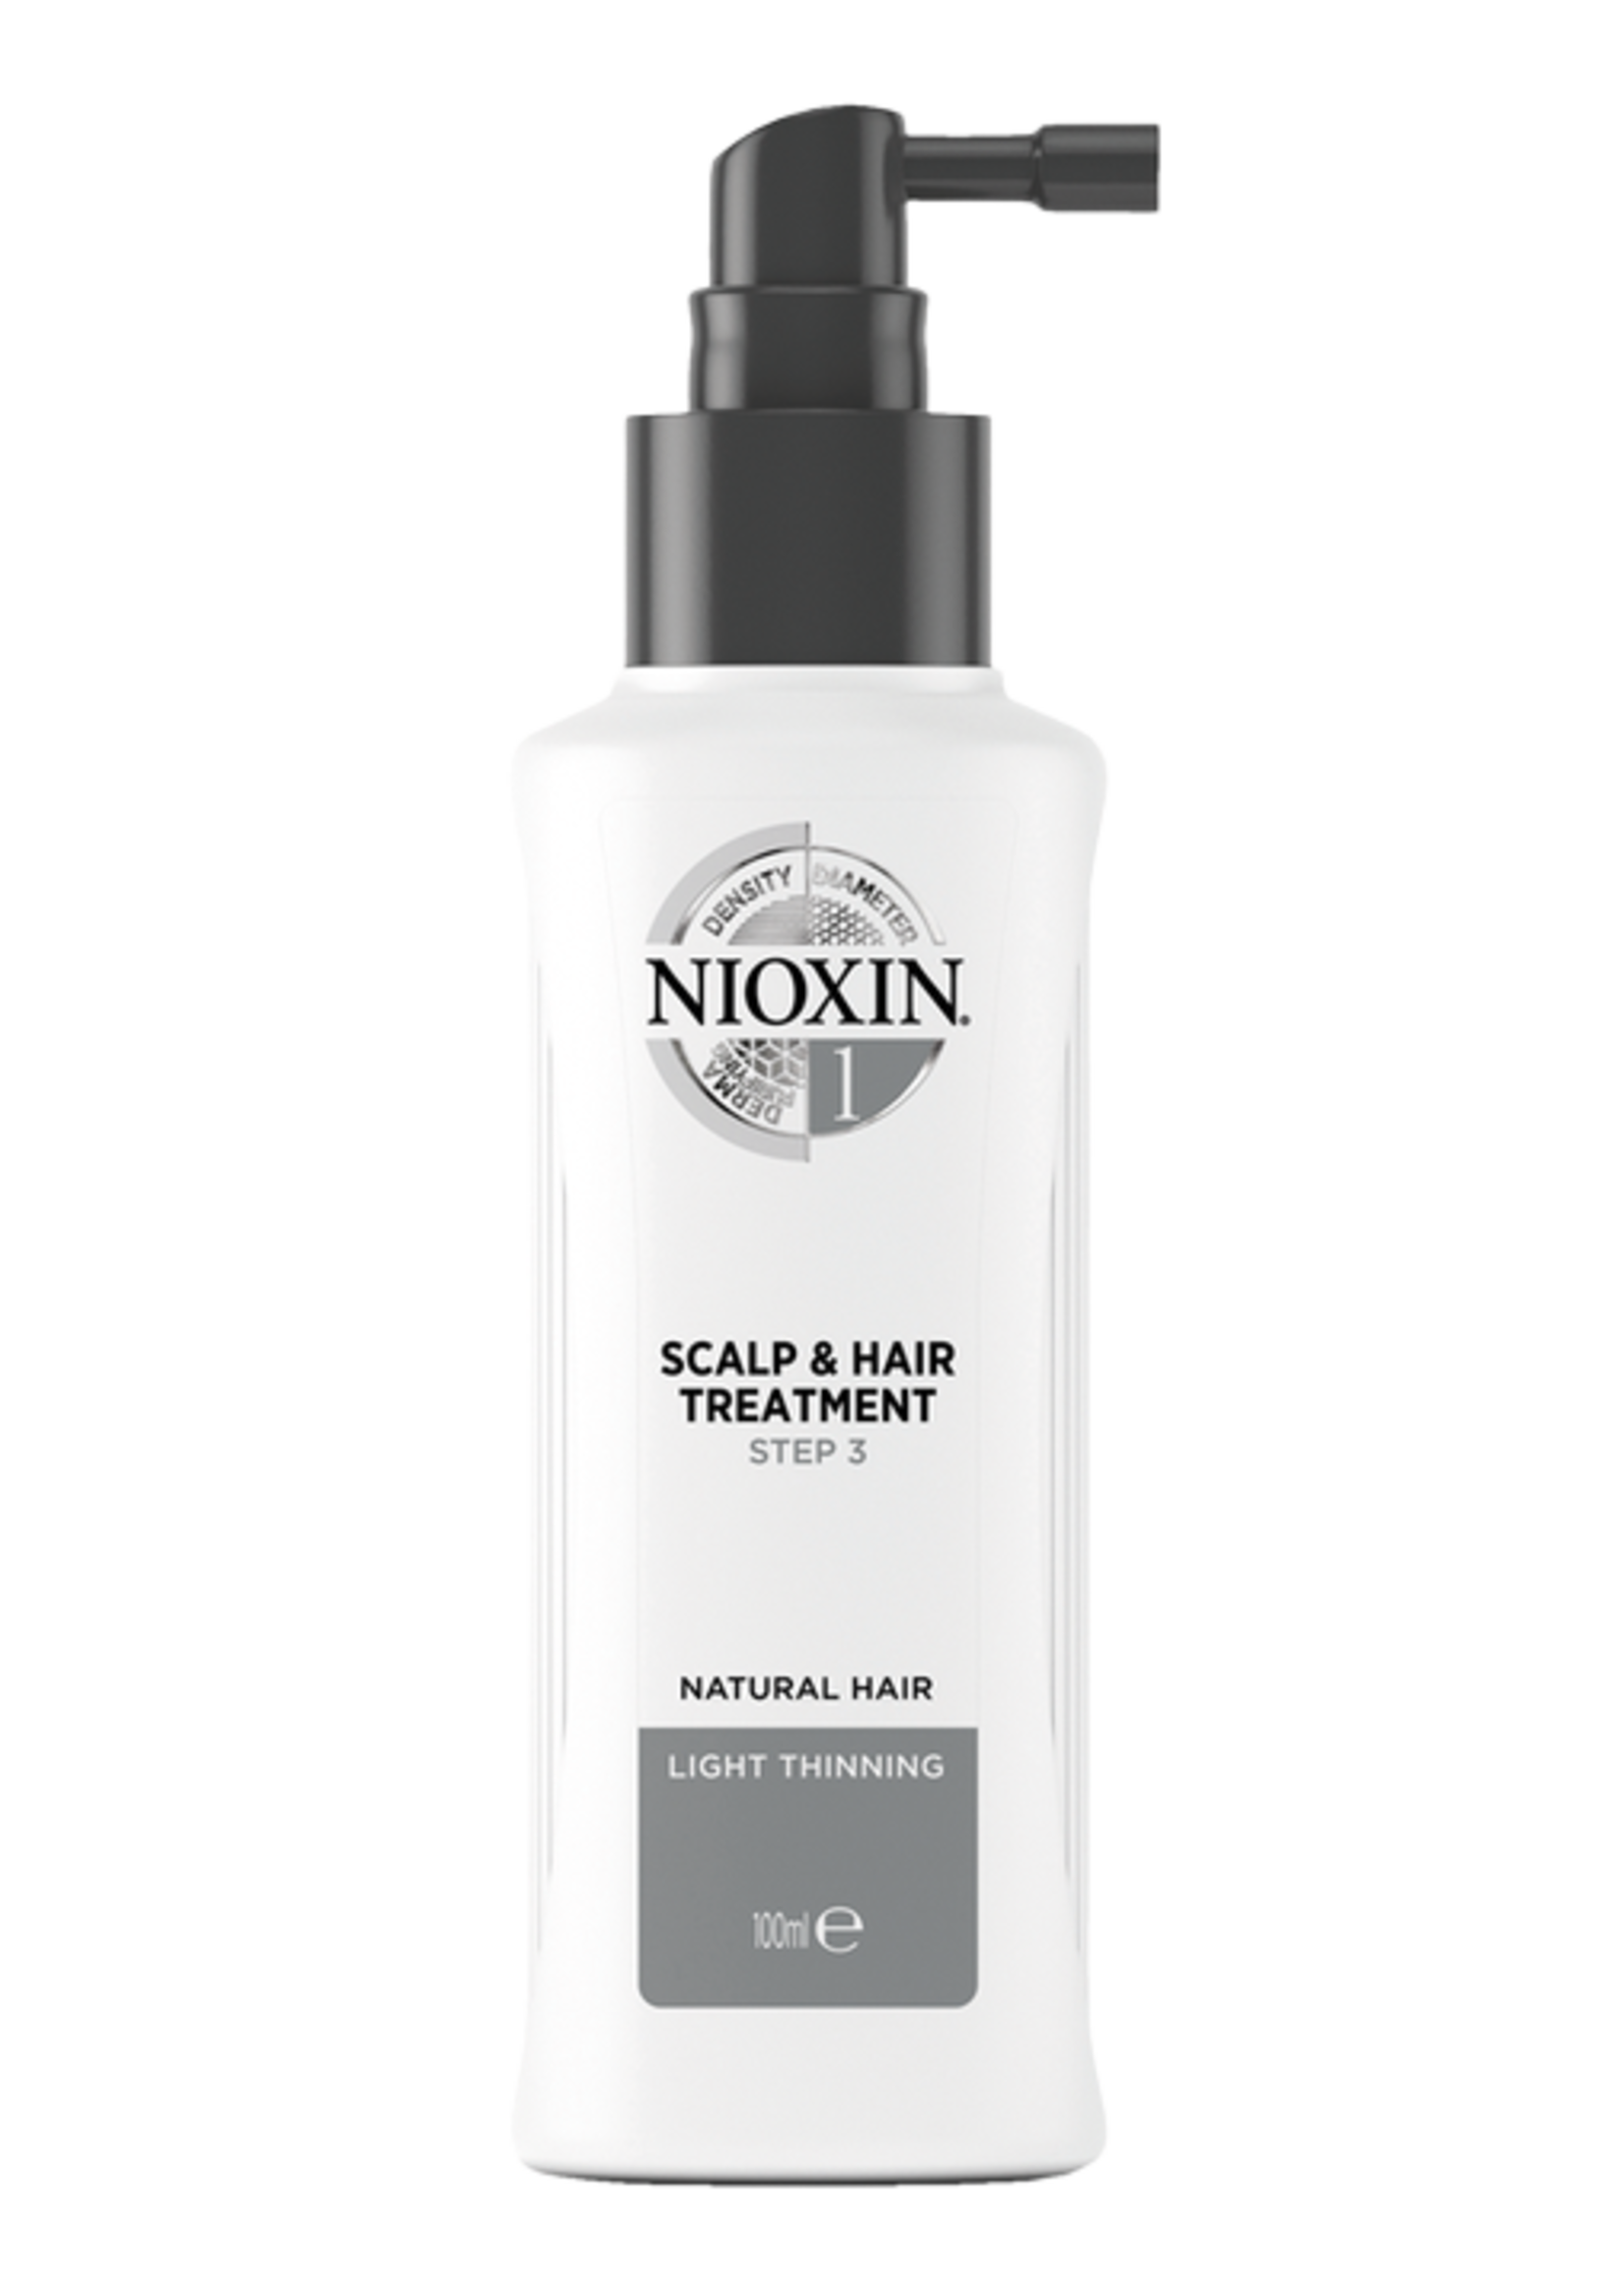 Nioxin Nioxin System 1 Scalp & Hair Treatment 100ml